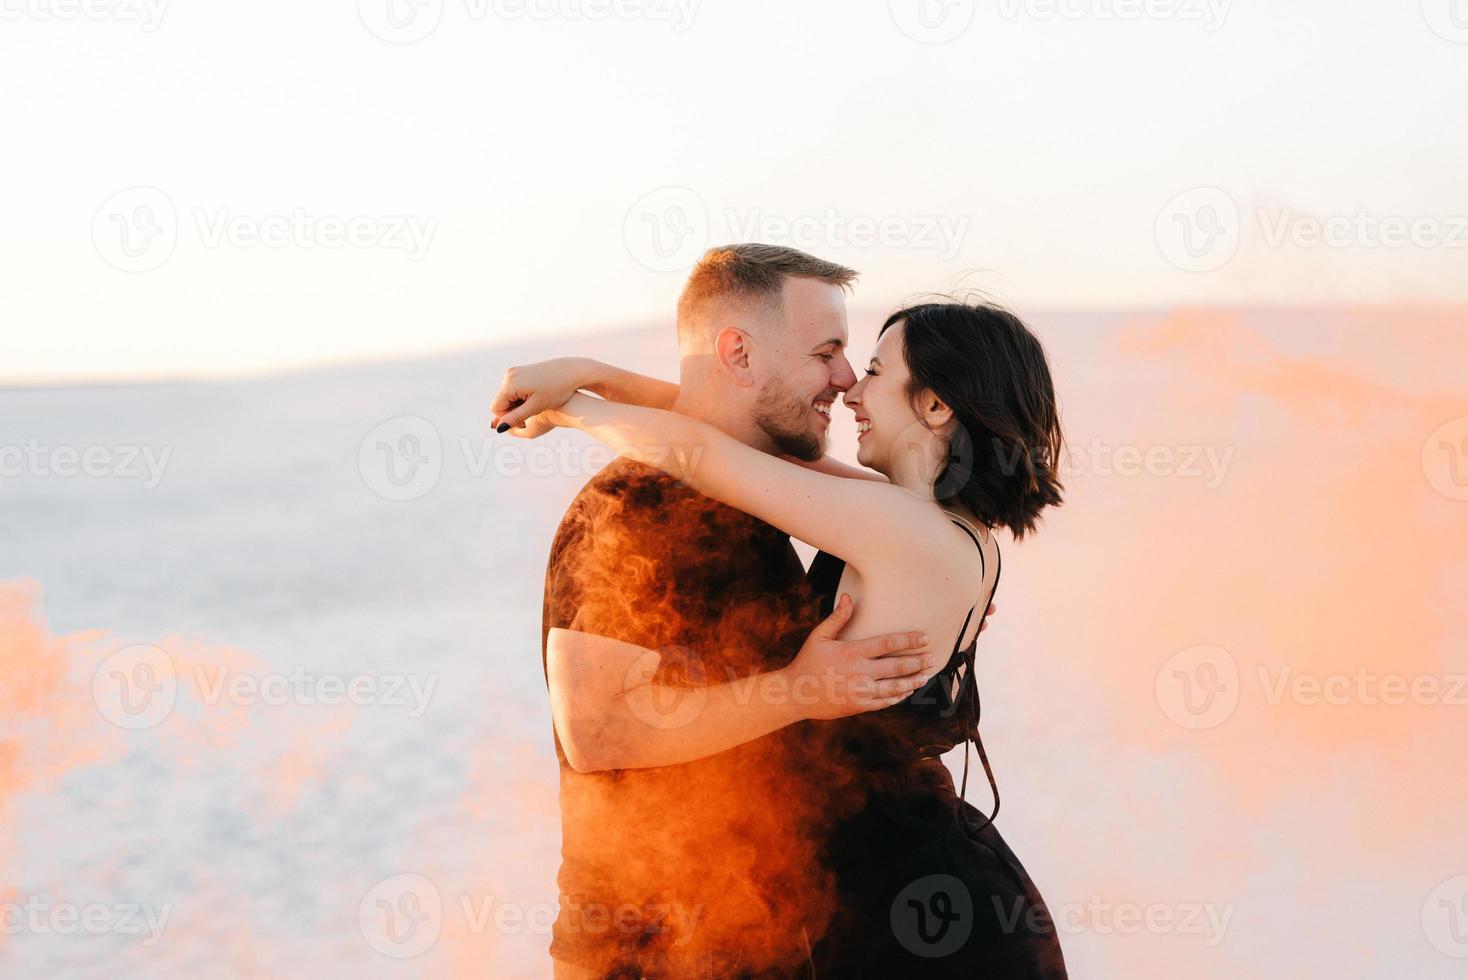 cara e garota em roupas pretas se abraçam e correm na areia branca foto